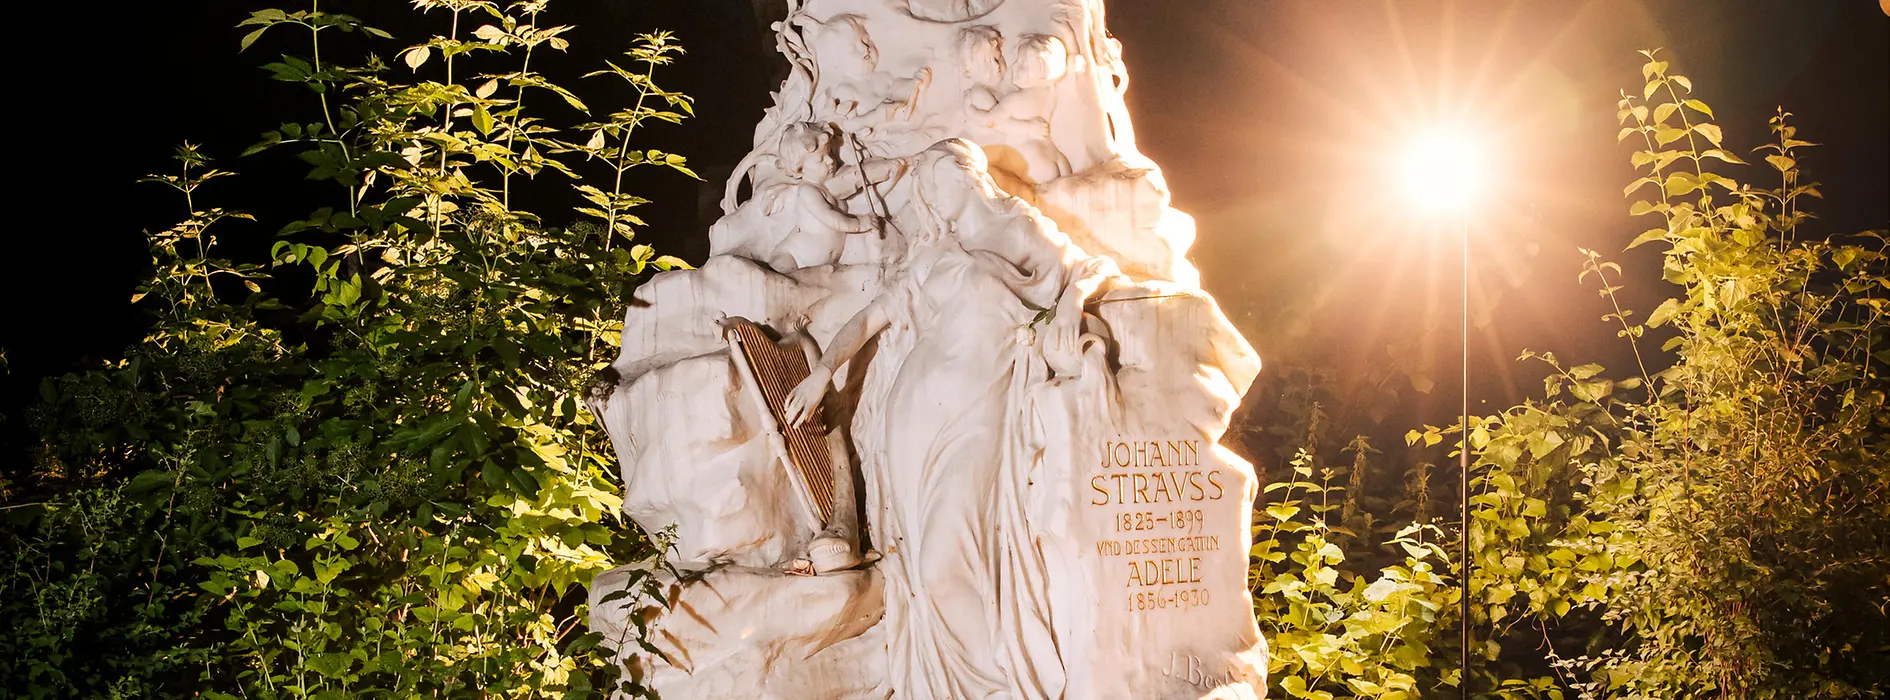 Johann Strauss' Grab am Zentralfriedhof